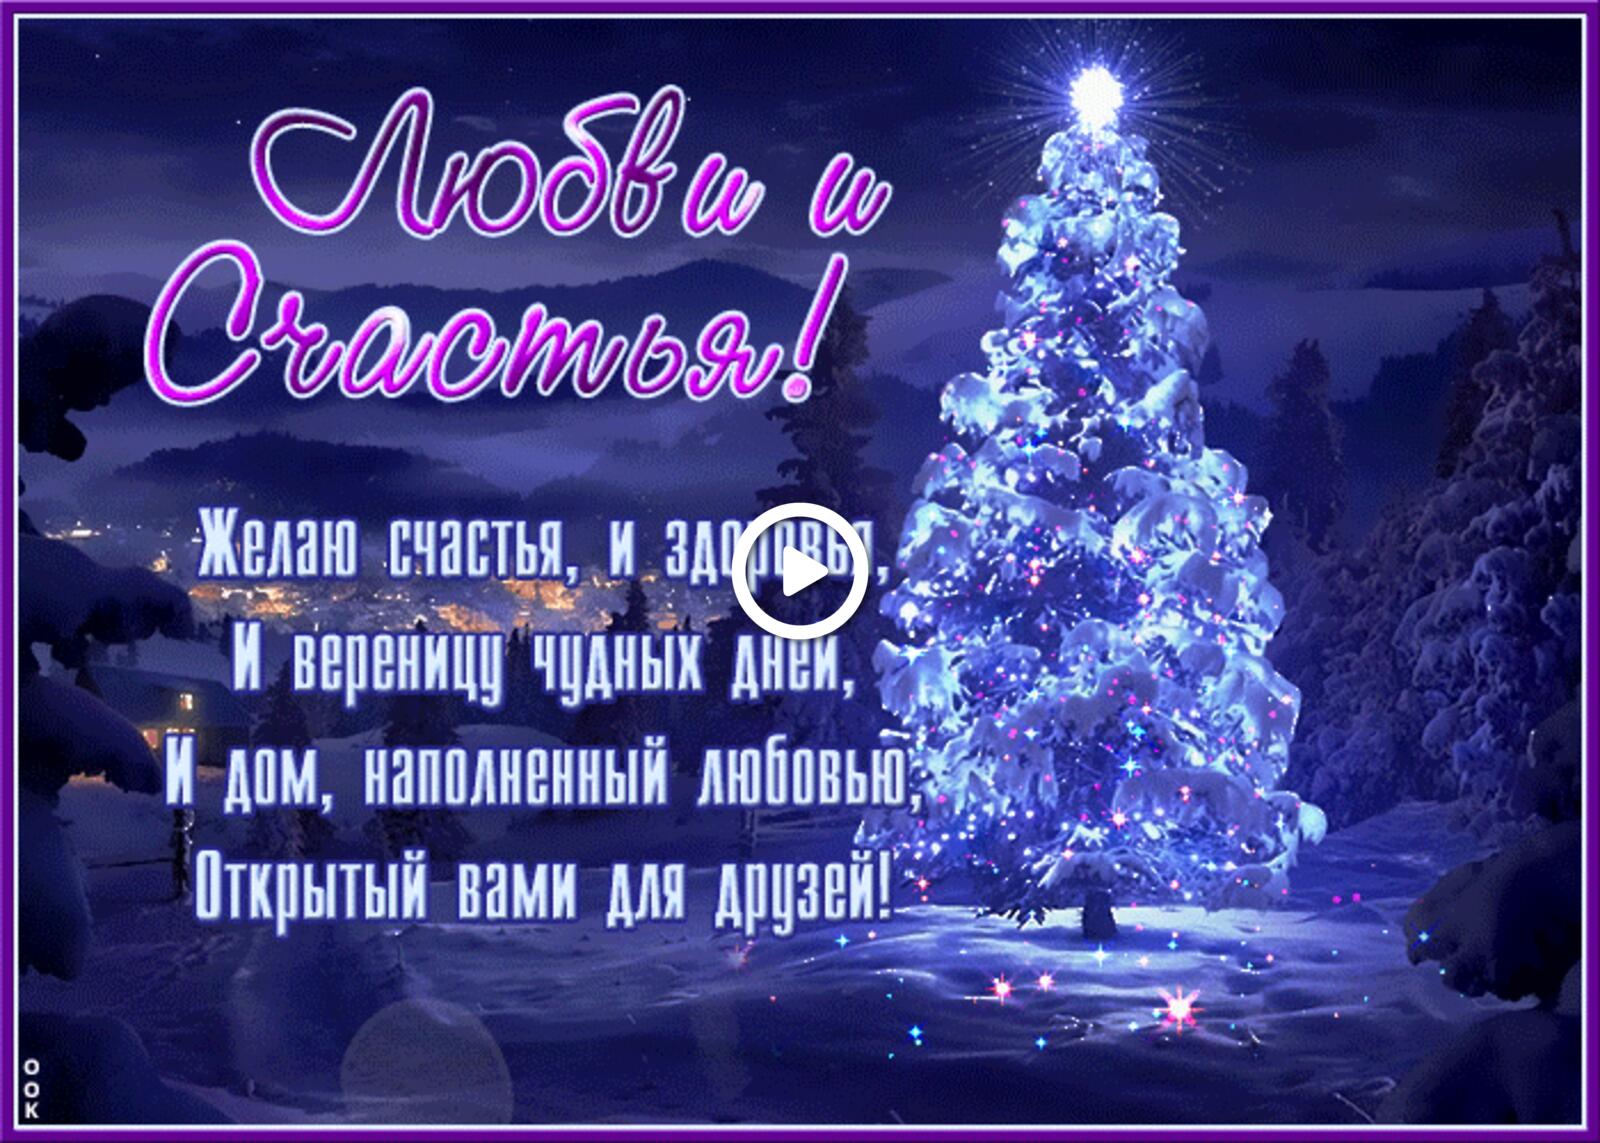 一张以献上爱与幸福的祝福 圣诞树 装饰的圣诞树为主题的明信片